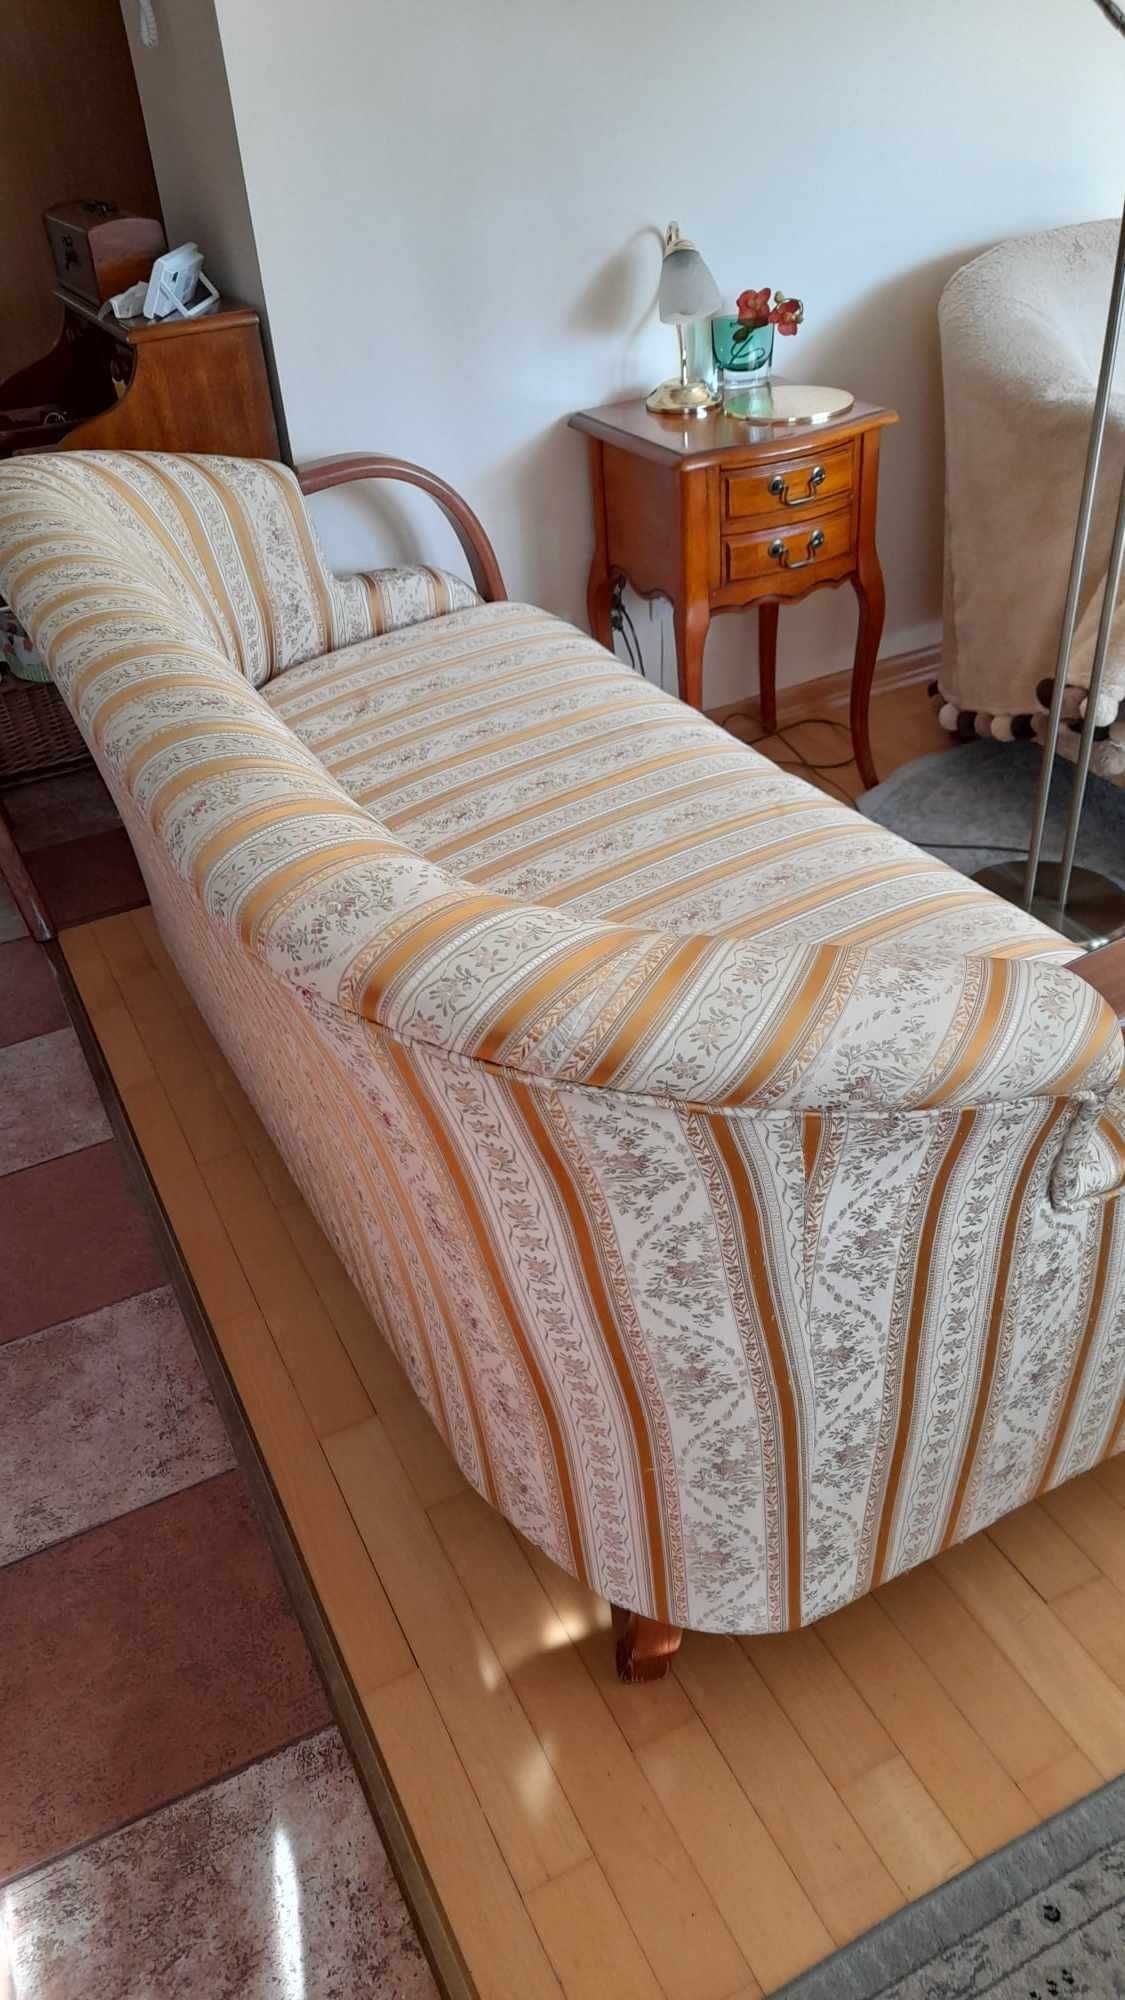 Sofa i fotel, stylizowane, używane, w bardzo dobrym stanie.